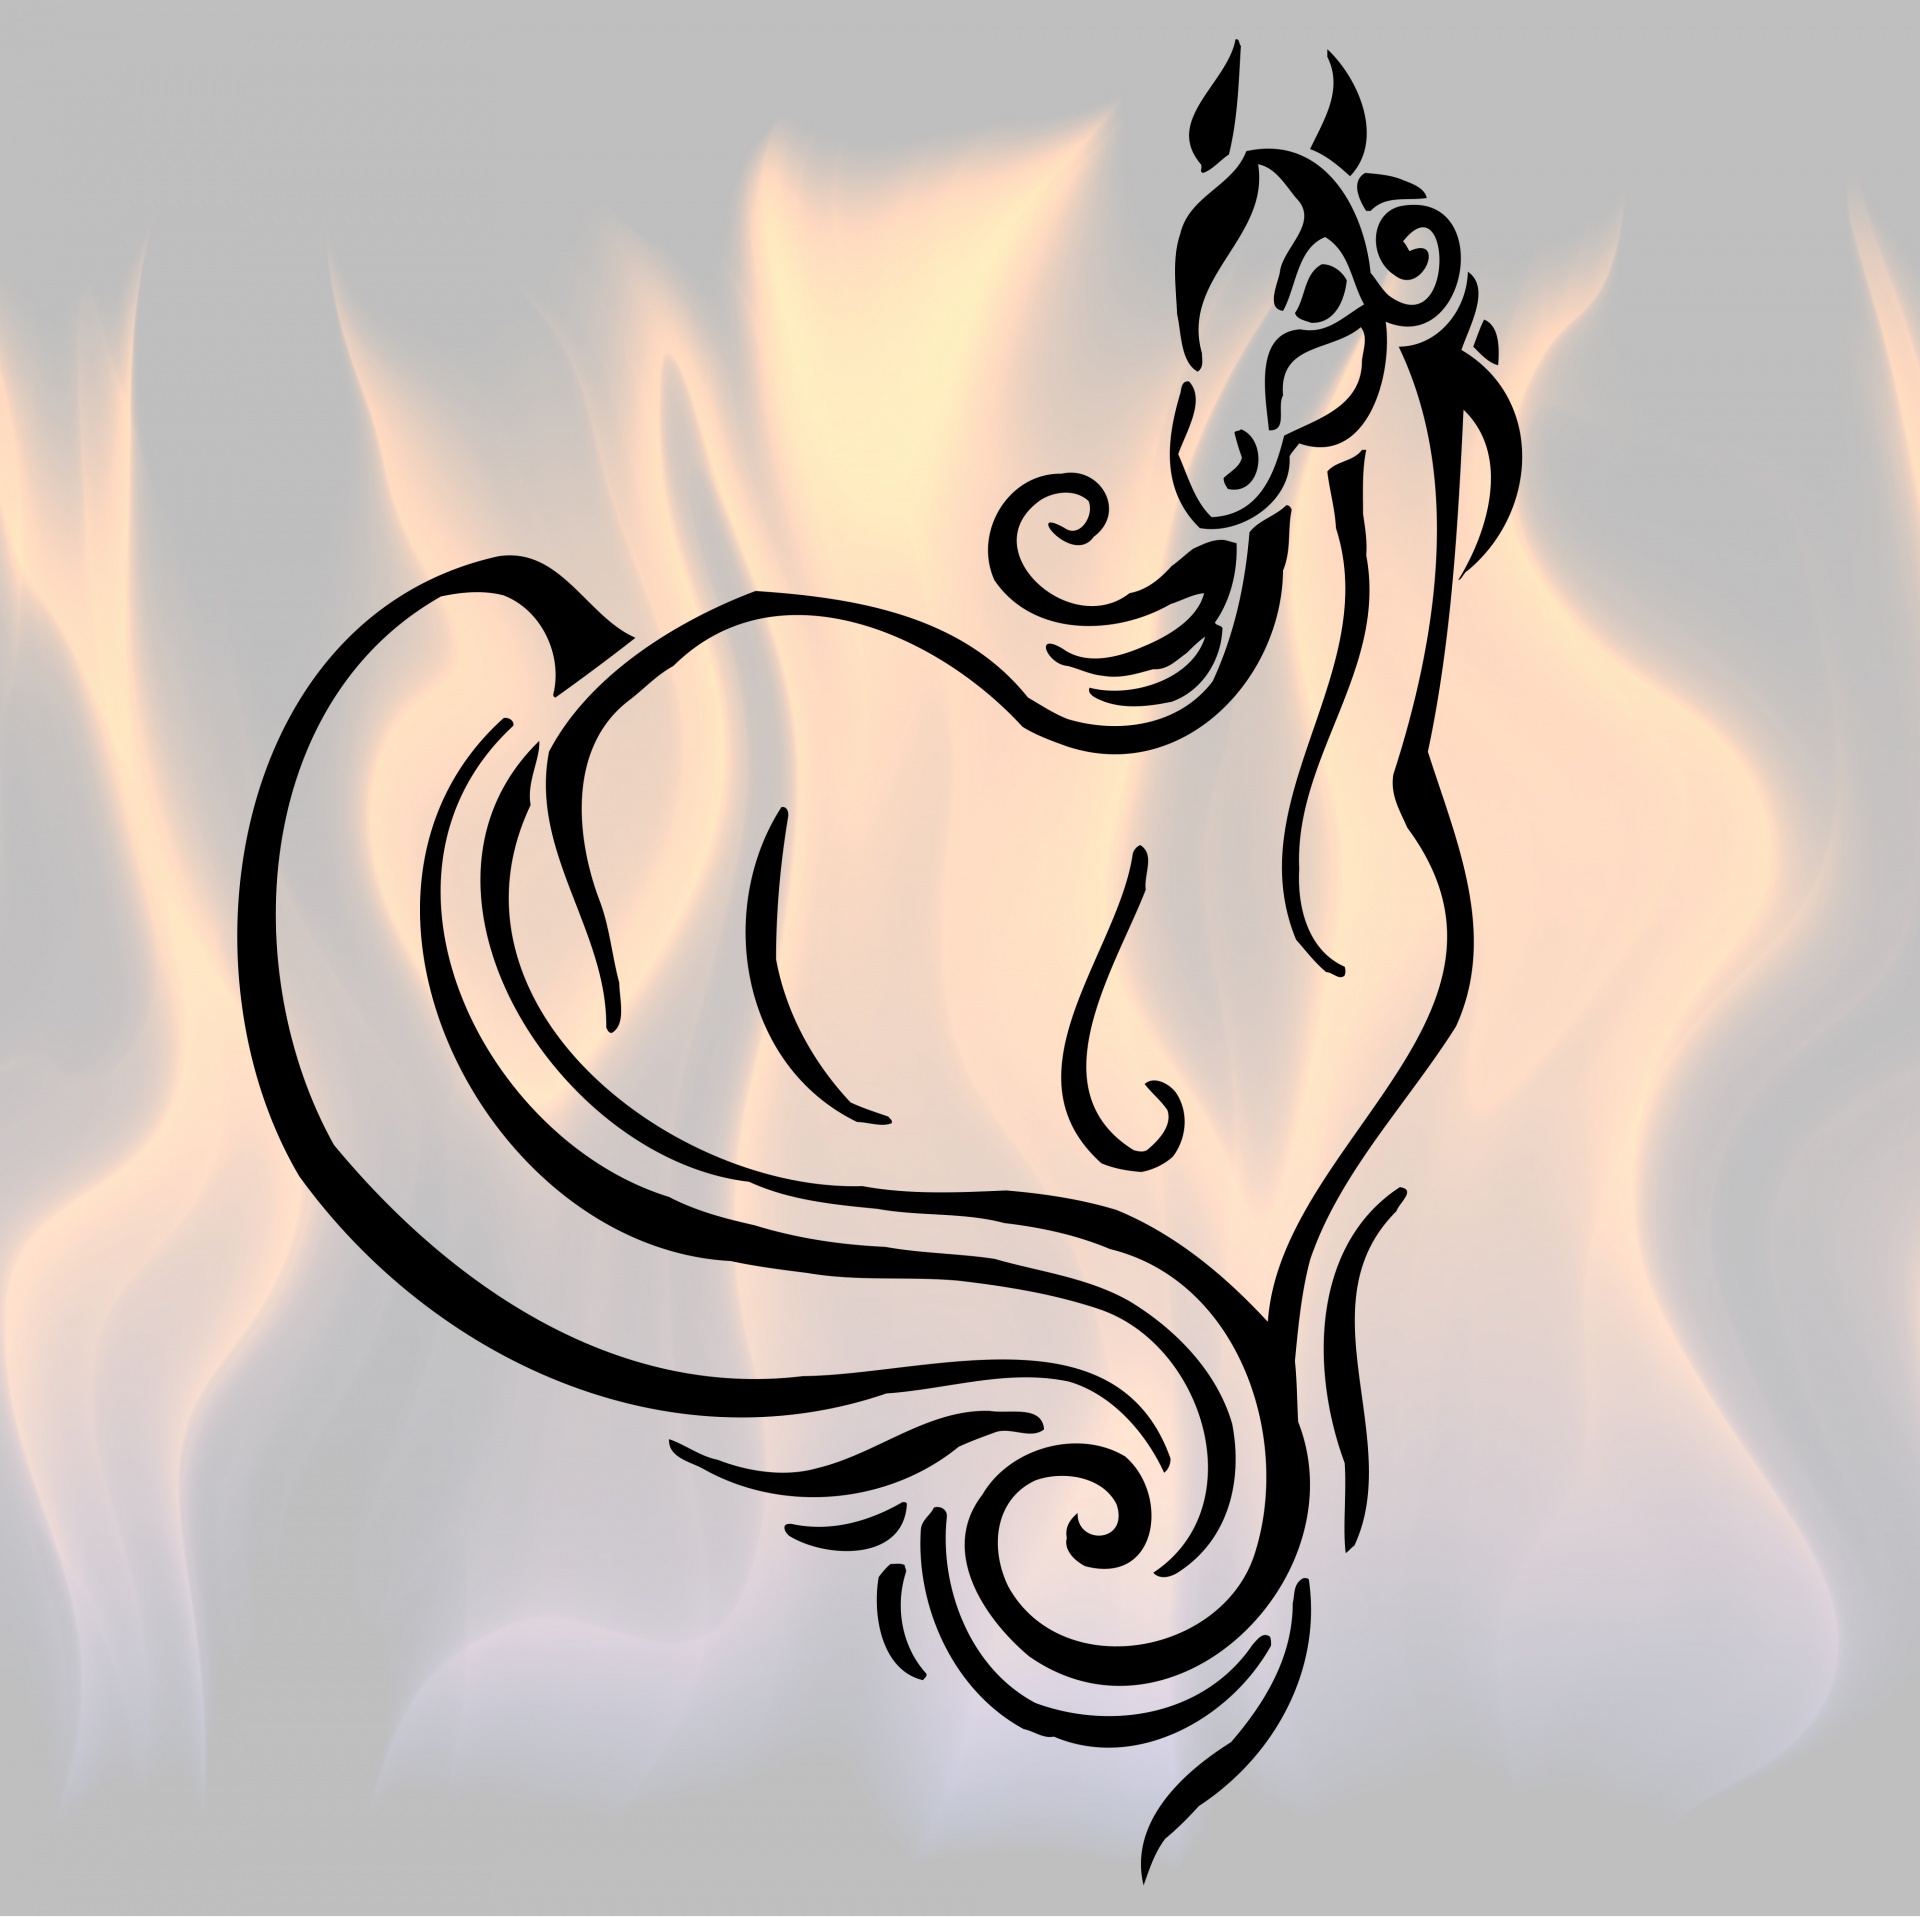 Cavalo em chamas 2